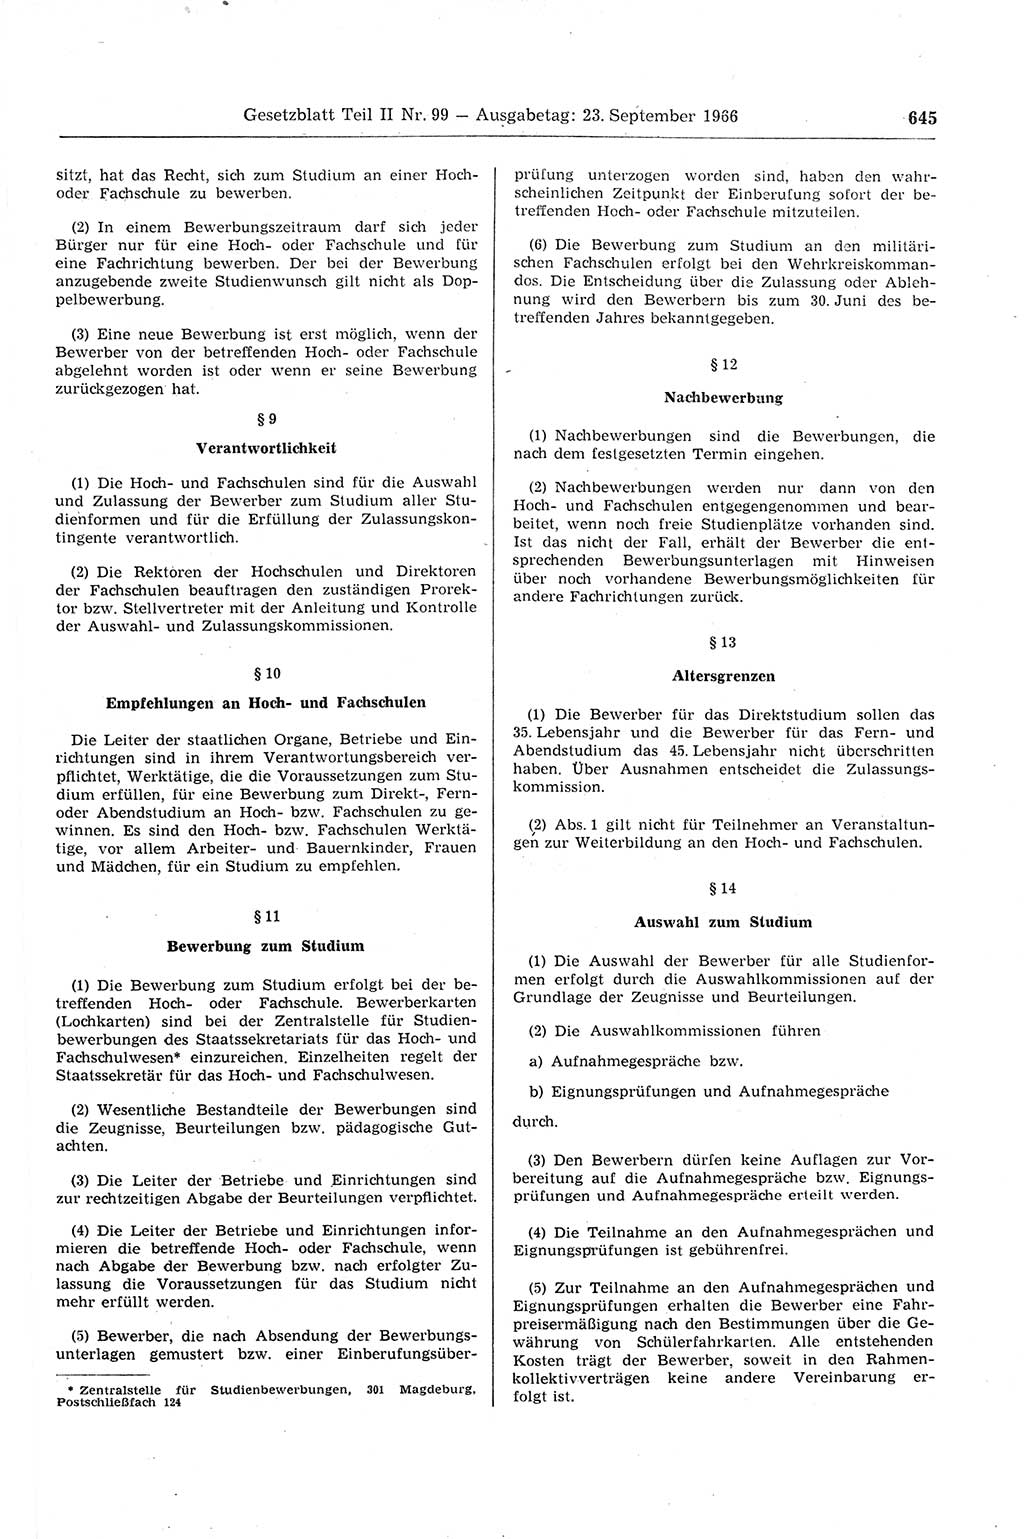 Gesetzblatt (GBl.) der Deutschen Demokratischen Republik (DDR) Teil ⅠⅠ 1966, Seite 645 (GBl. DDR ⅠⅠ 1966, S. 645)